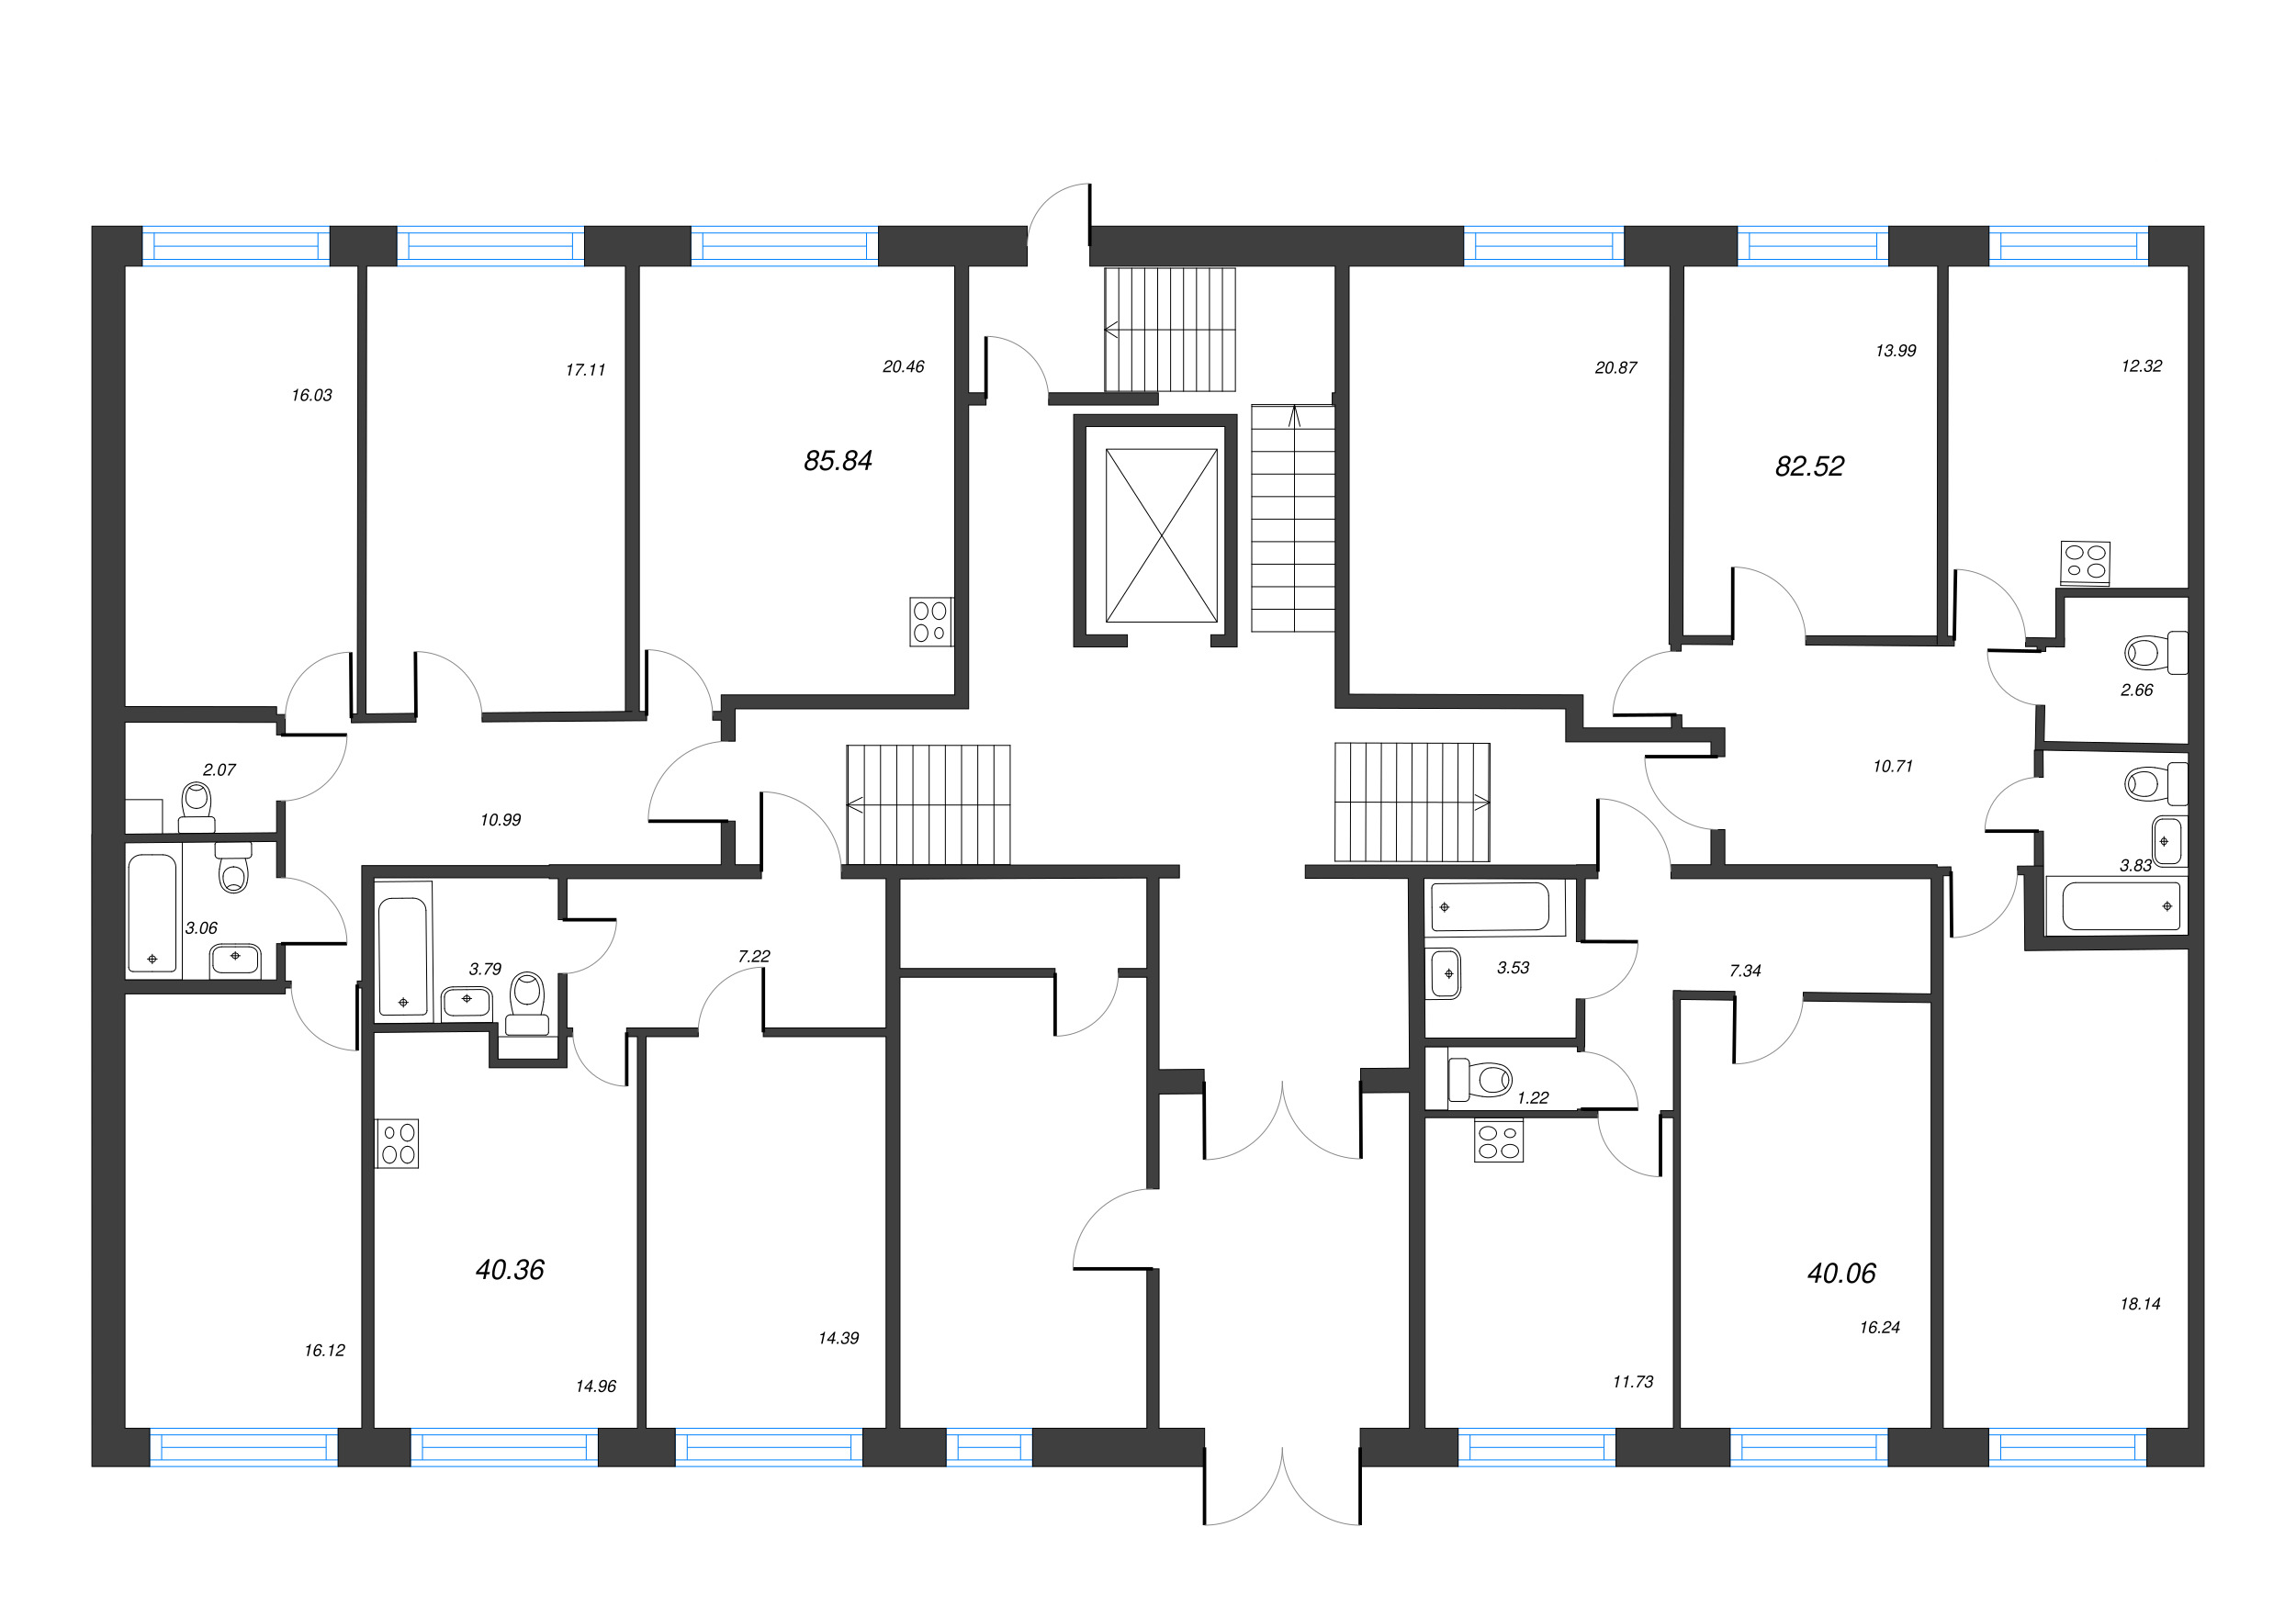 3-комнатная квартира, 82.52 м² в ЖК "OKLA" - планировка этажа